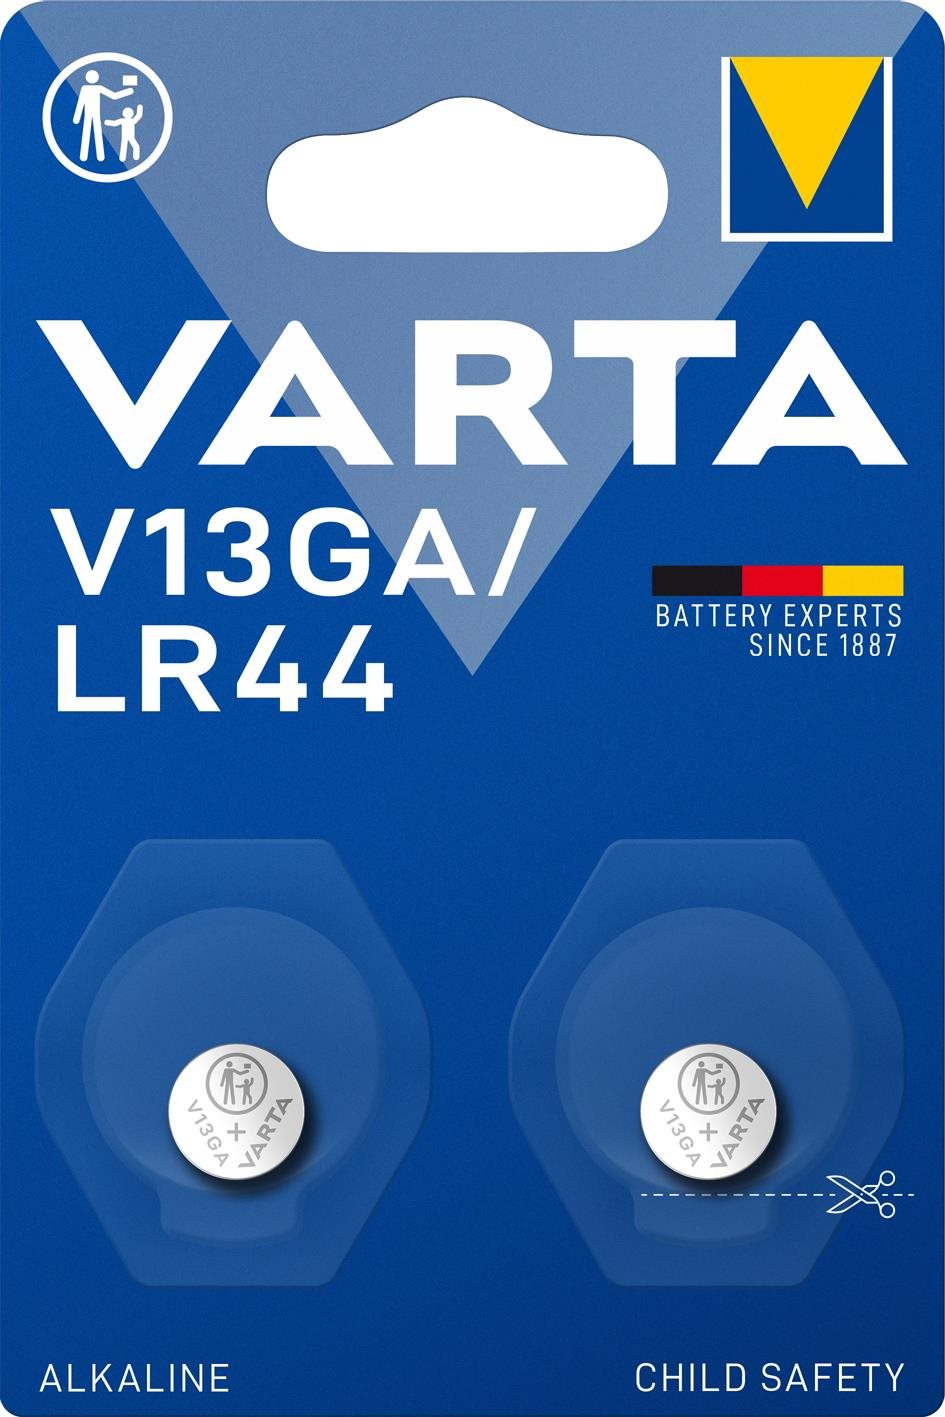 VARTA V13GA/LR44 Speciális alkáli elem - 2 db